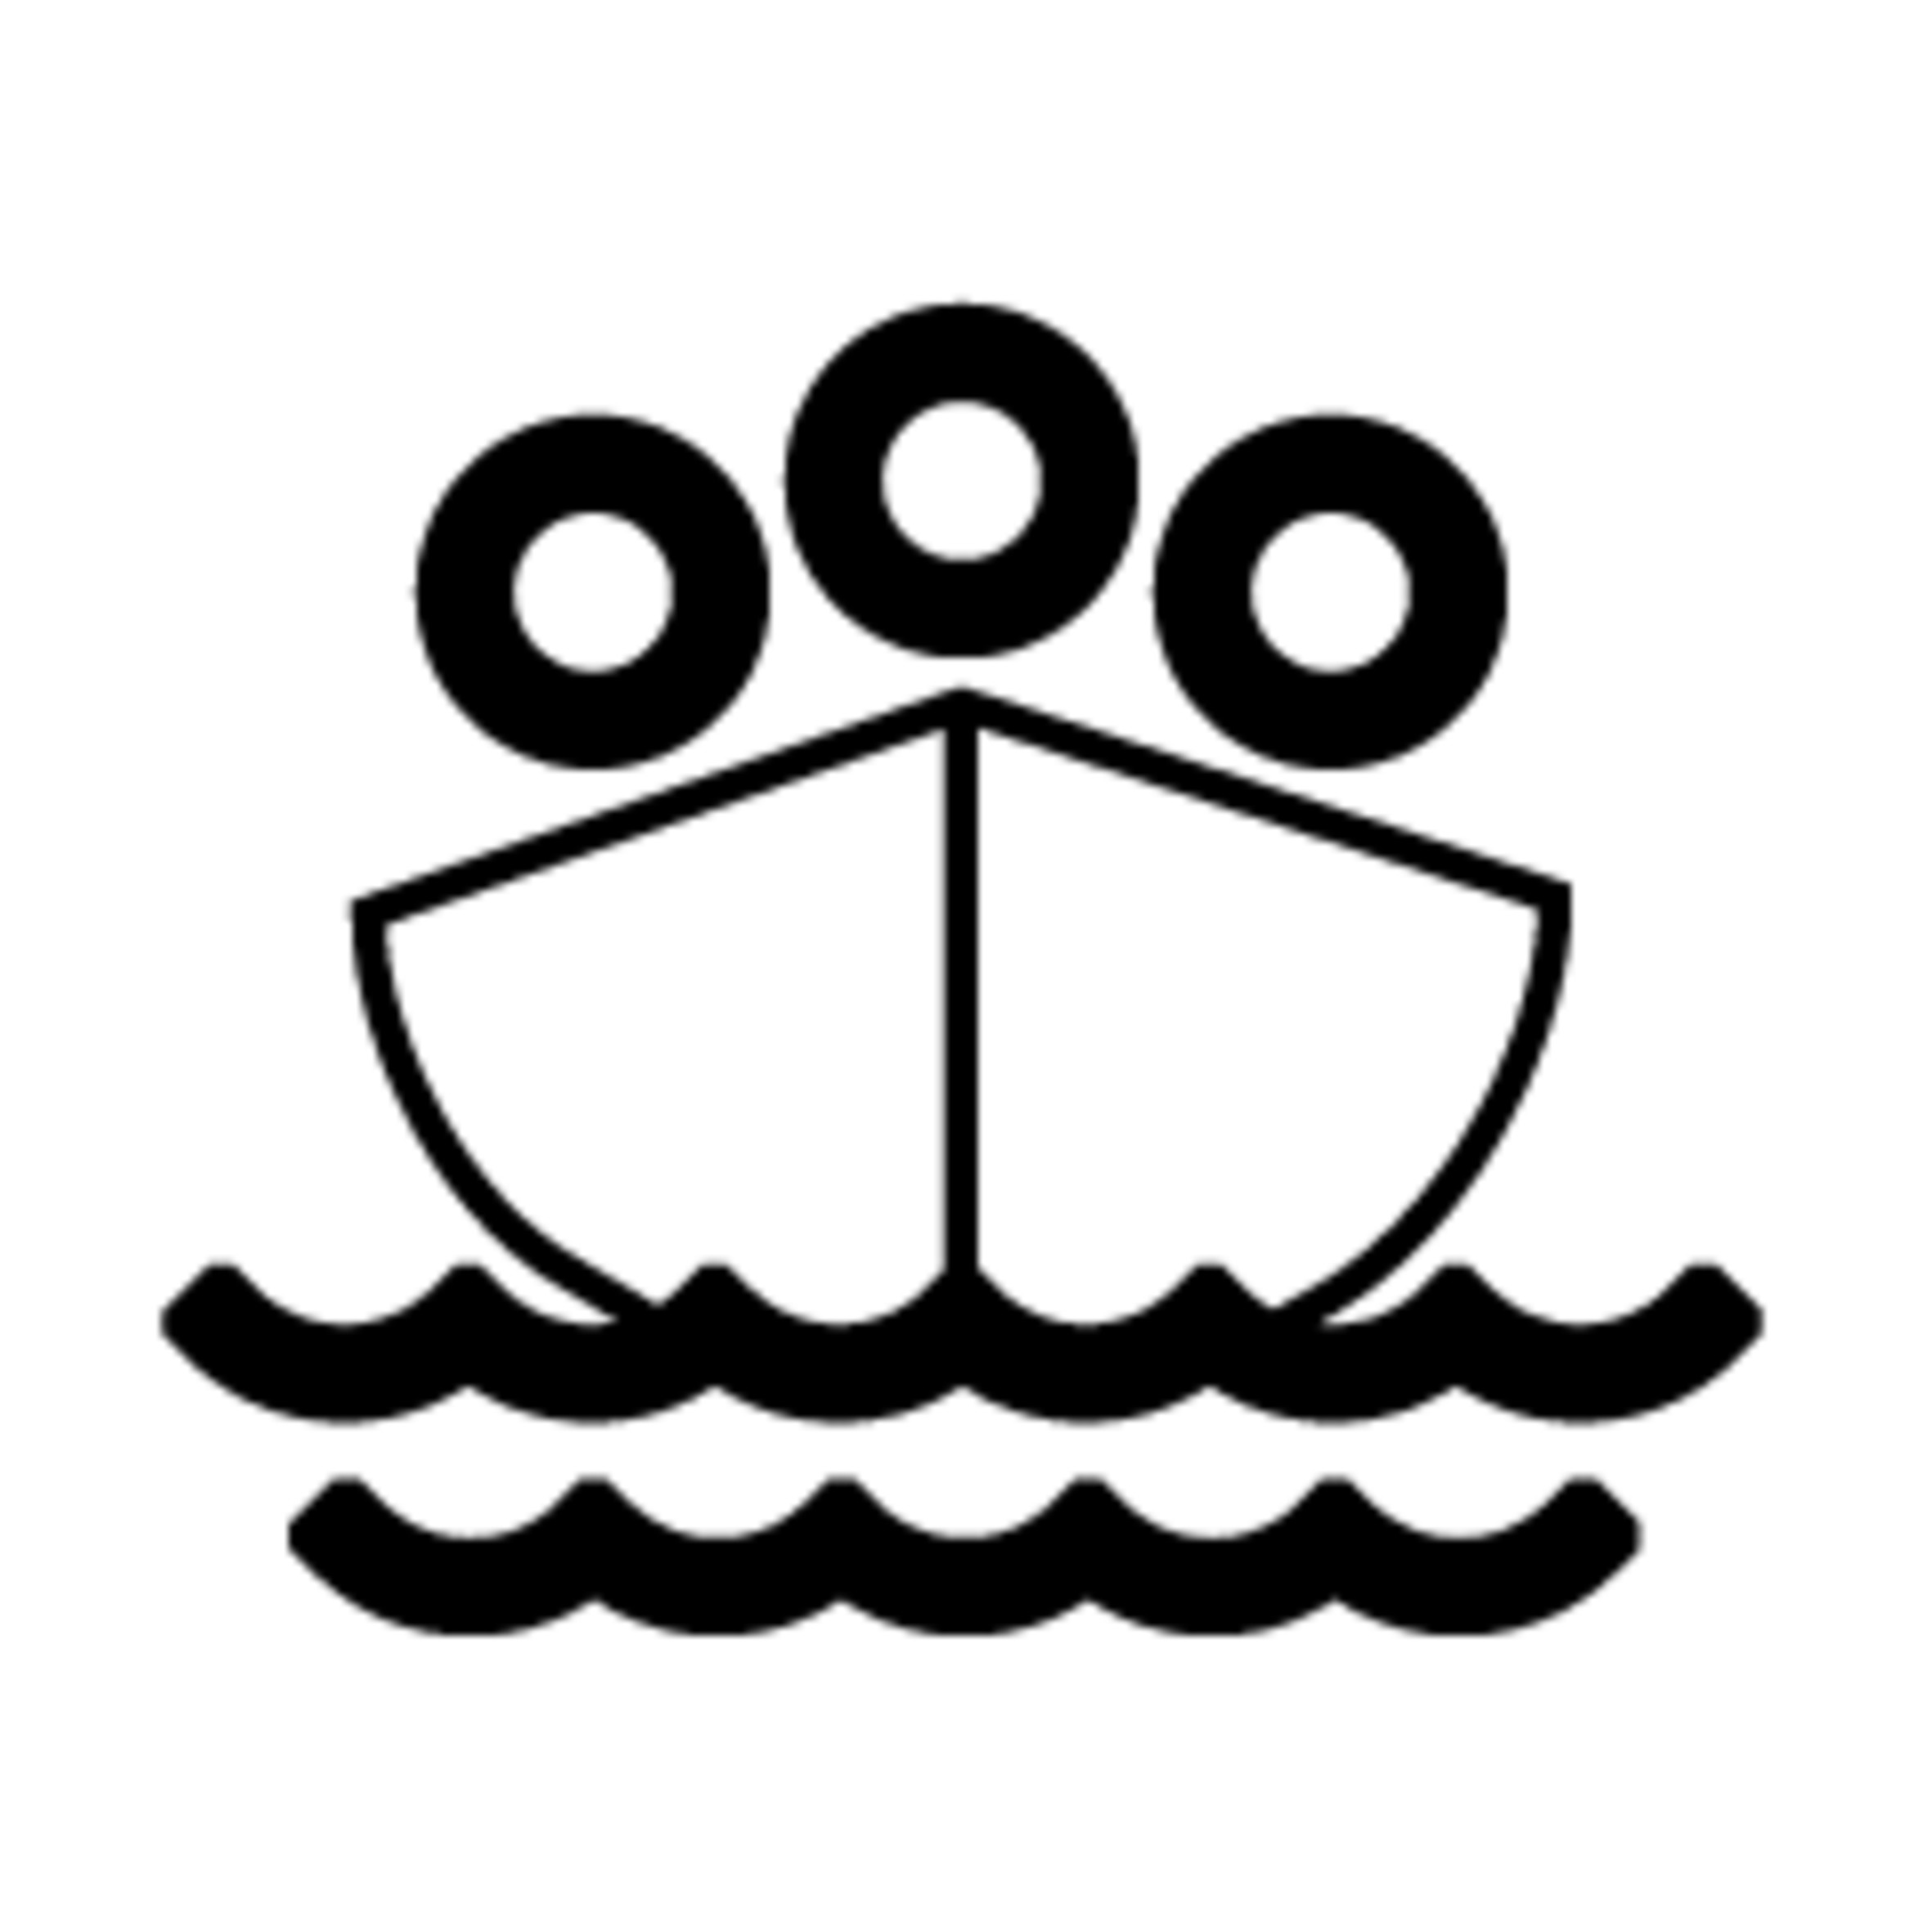 Piktogramm eines Bootes auf dem Meer mit Menschen darin